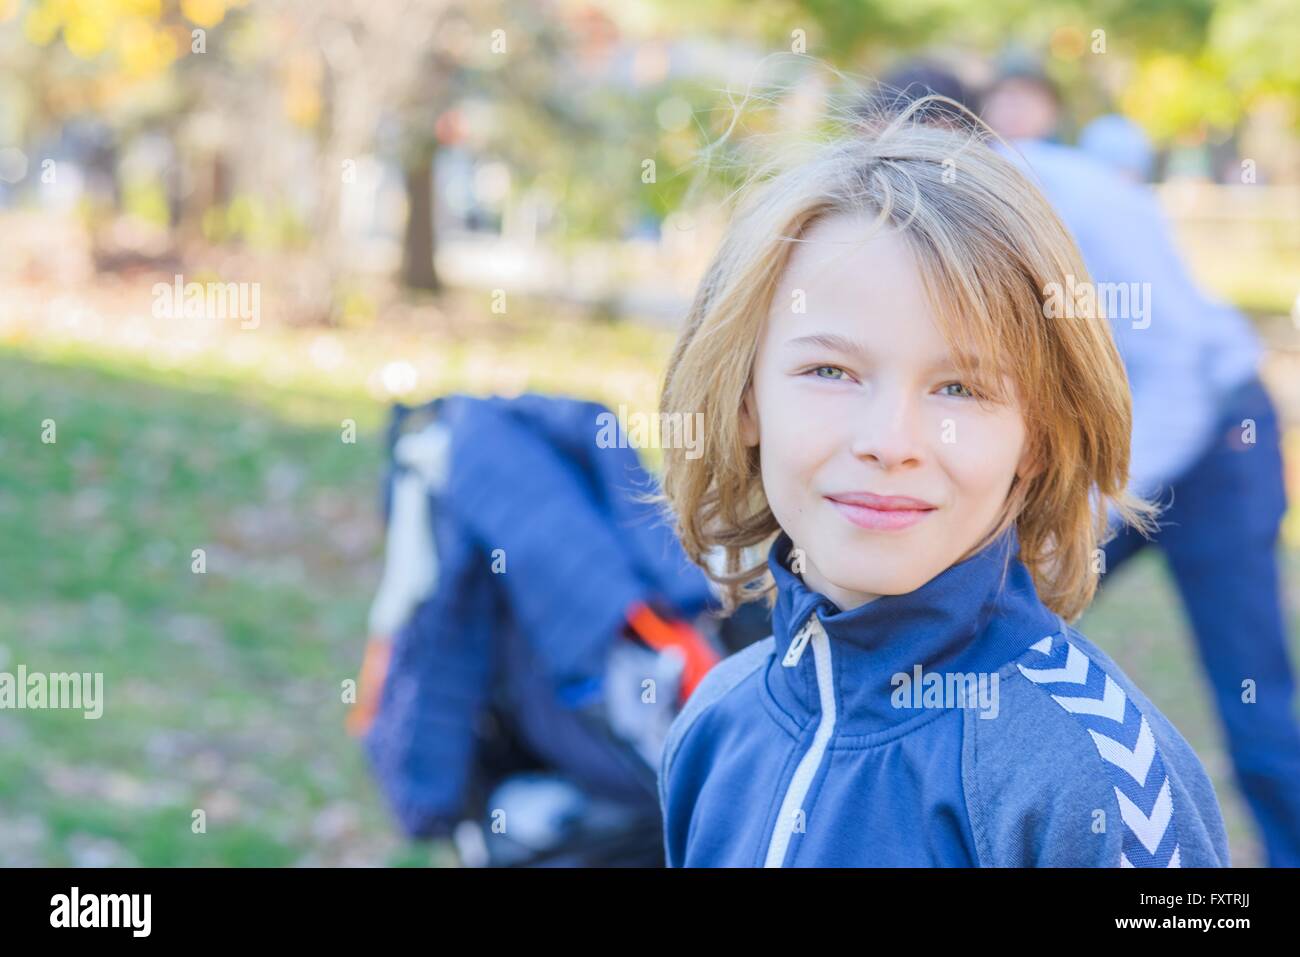 Portrait de garçon, outdoors, smiling Banque D'Images